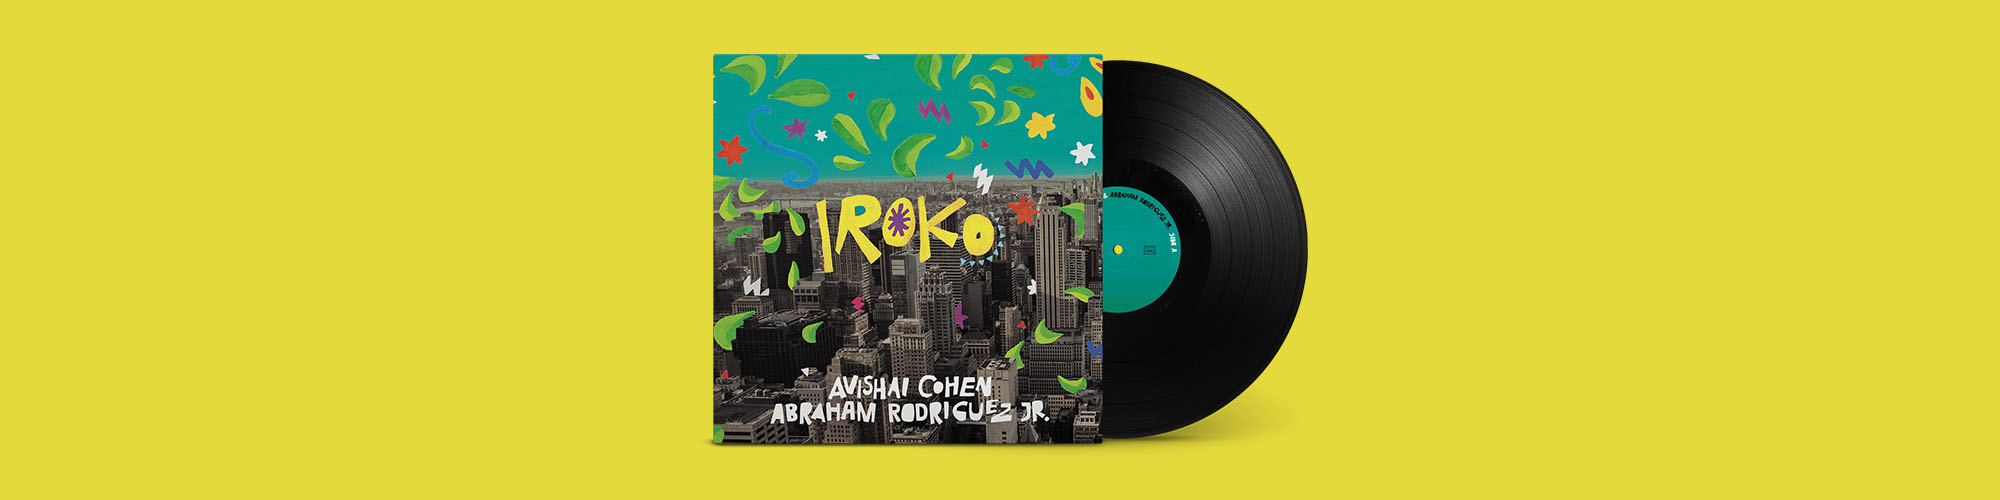 Avishai Cohen new album Iroko